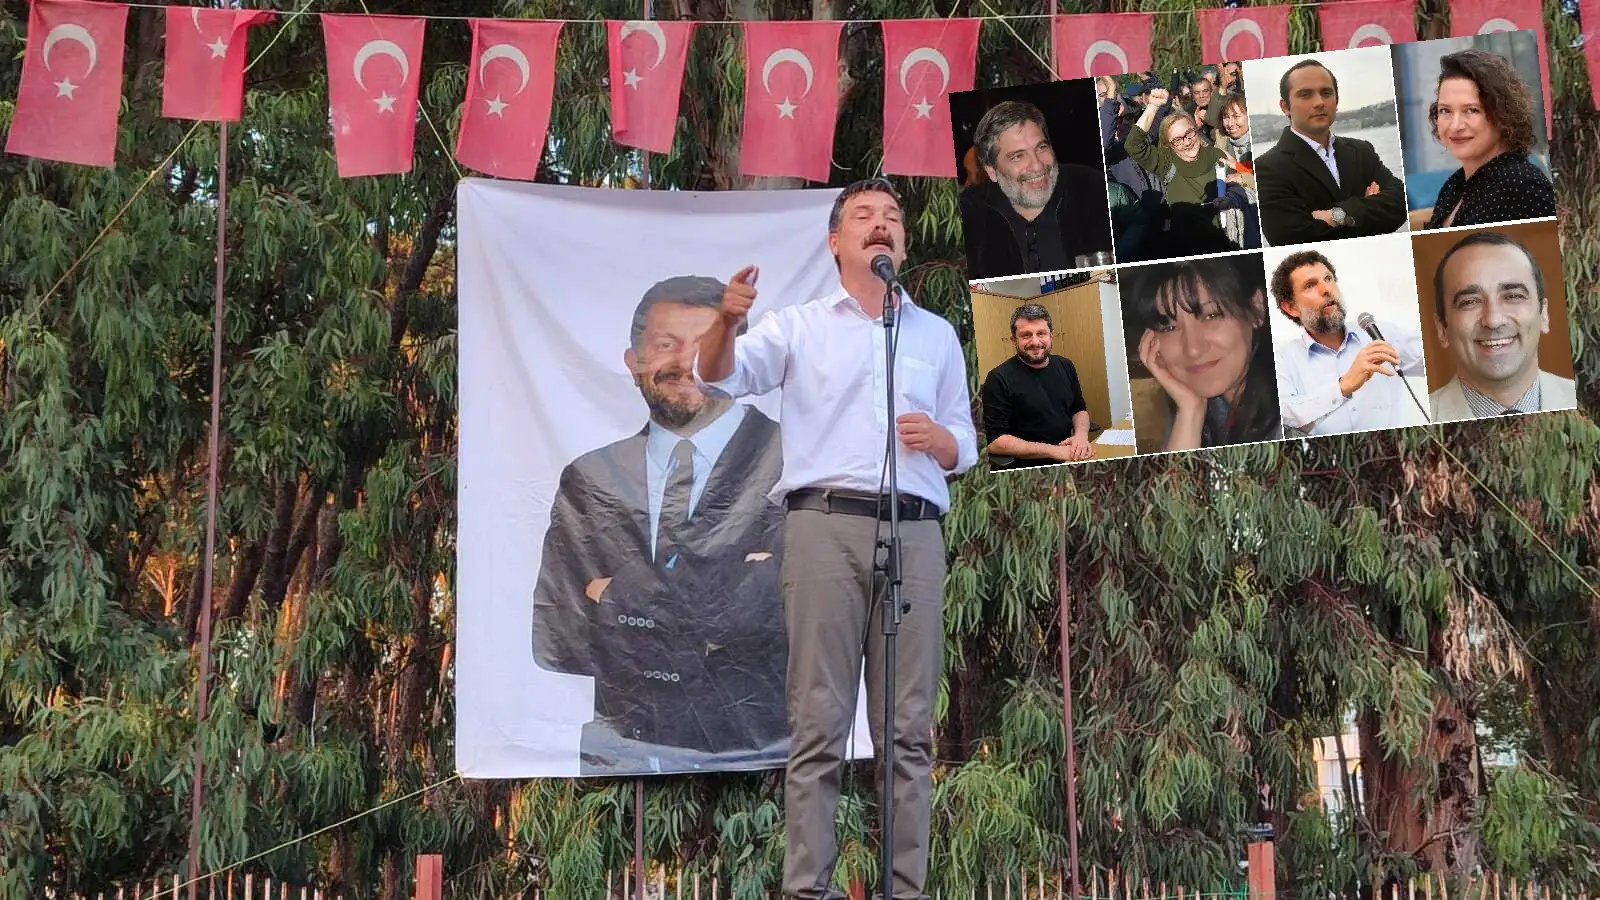 Yargıtay Can Atalay'ın cezasını onadı, Erkan Baş'tan çok sert açıklama ve çağrı geldi! - Yargıtay 3. Ceza Dairesi, Gezi Parkı davasında, Osman Kavala ile Can Atalay'ın da arasında olduğu 5 sanığın mahkumiyetlerini onadı, 3 sanık hakkındaki hükümler bozuldu.